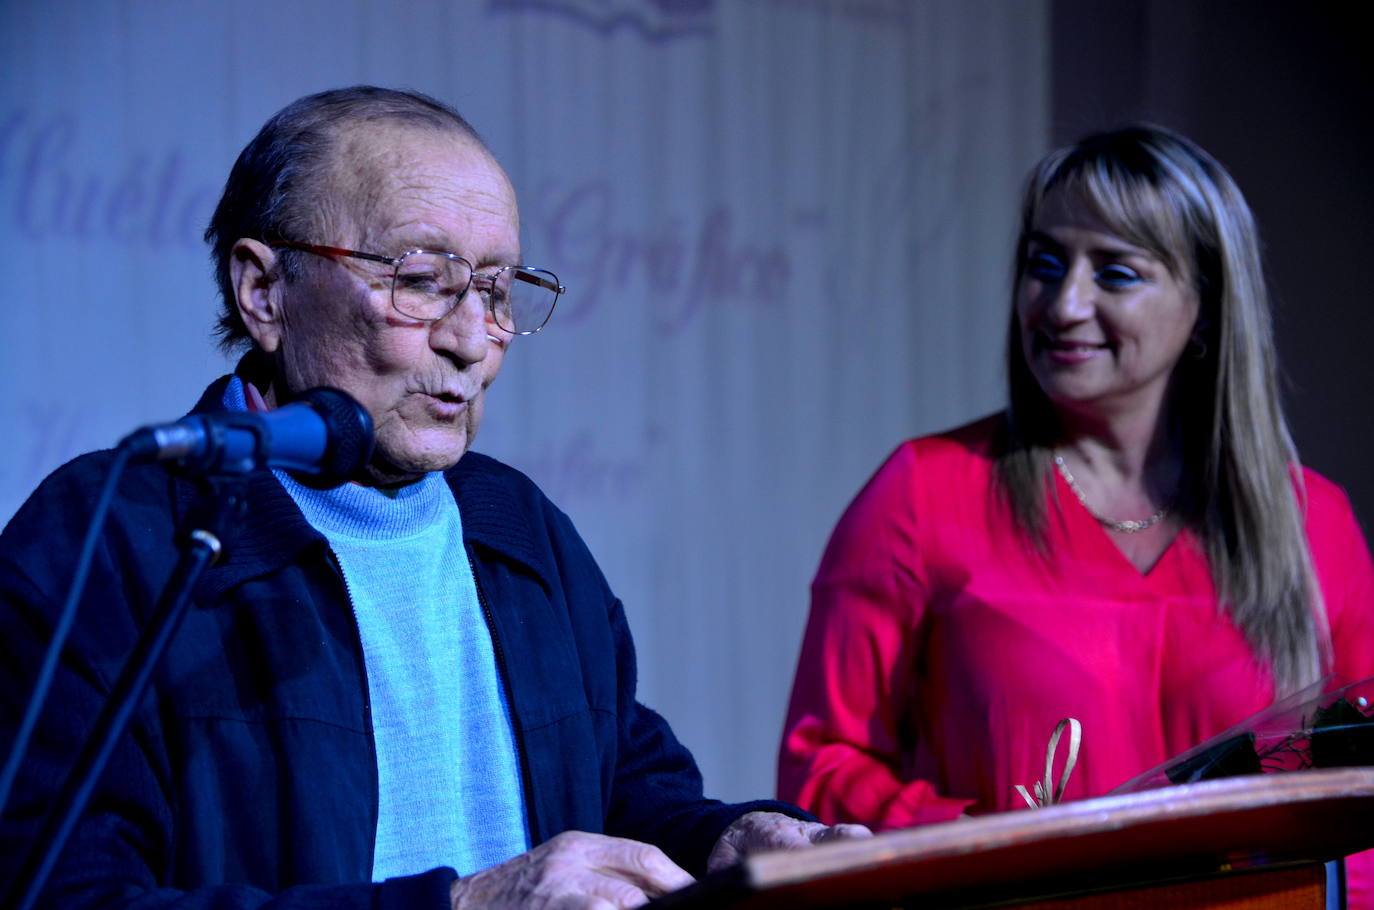 El Centro del Vino y Flamenco, en Huerta Cercada, acogió el acto de homenaje a ‘Huétor Vega Gráfico’.